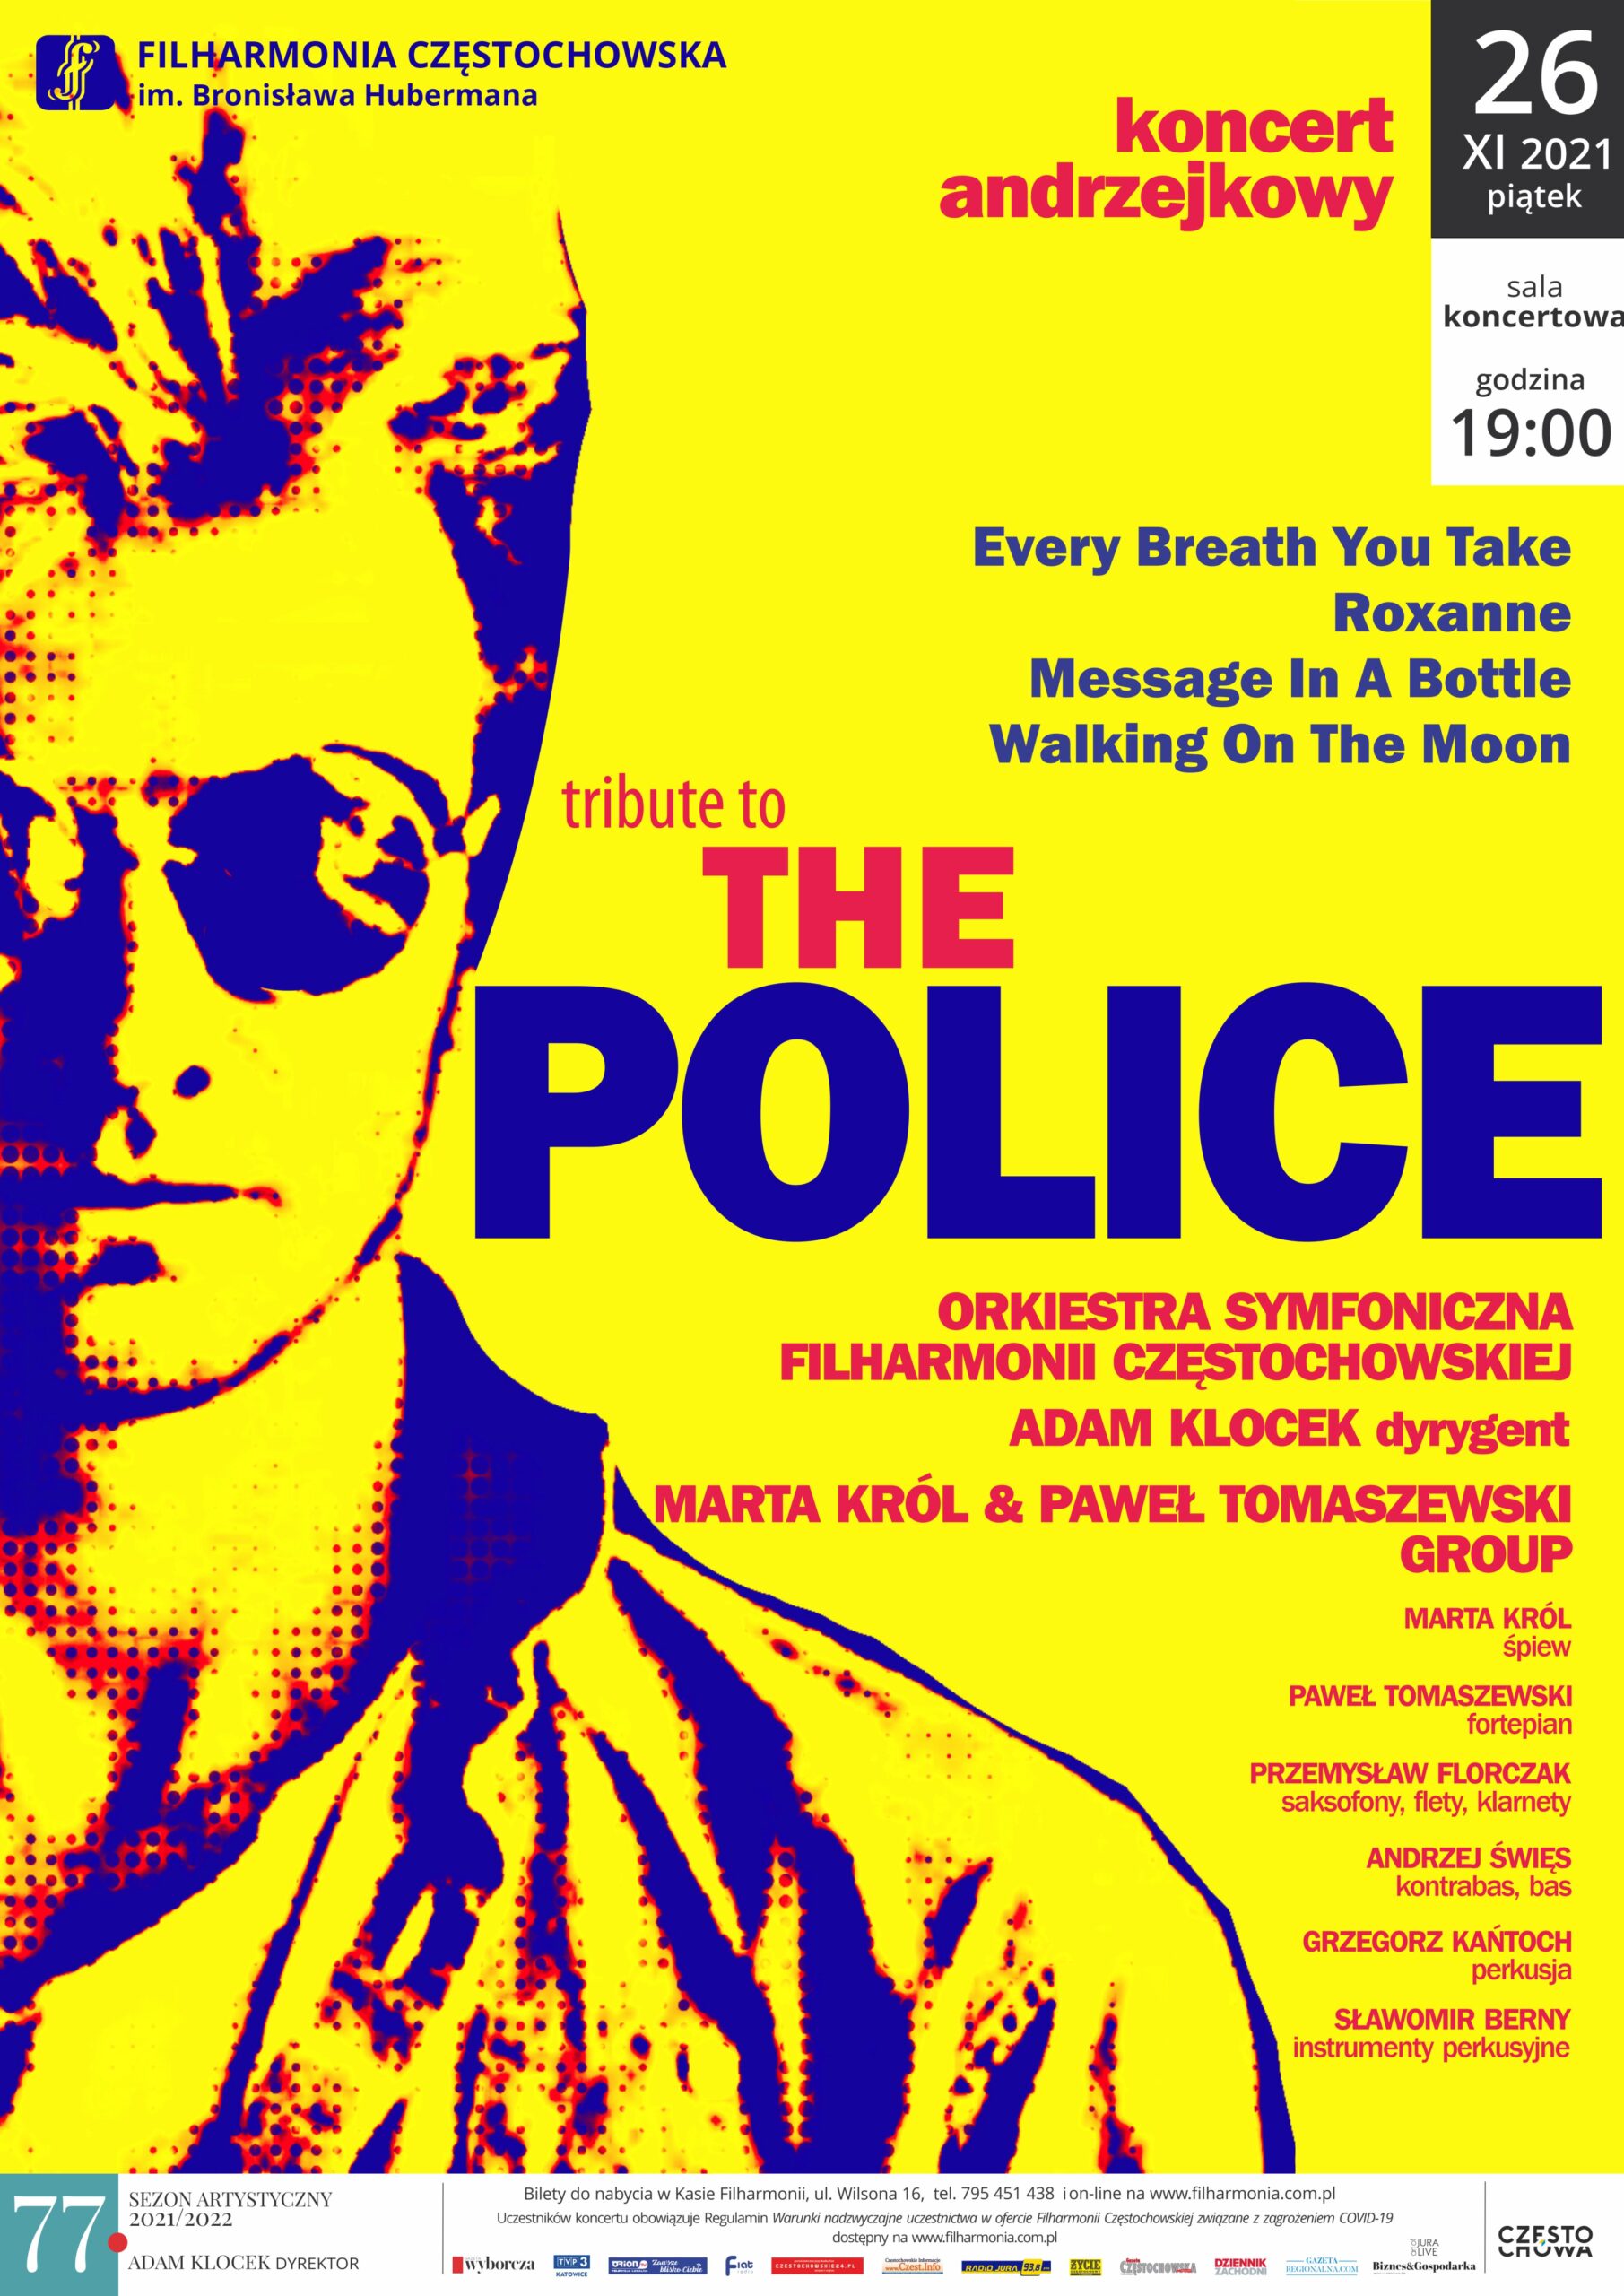 "Tribiute the Police”, czyli andrzejkowa propozycja Filharmonii Częstochowskiej. Będzie przebojowo! 9